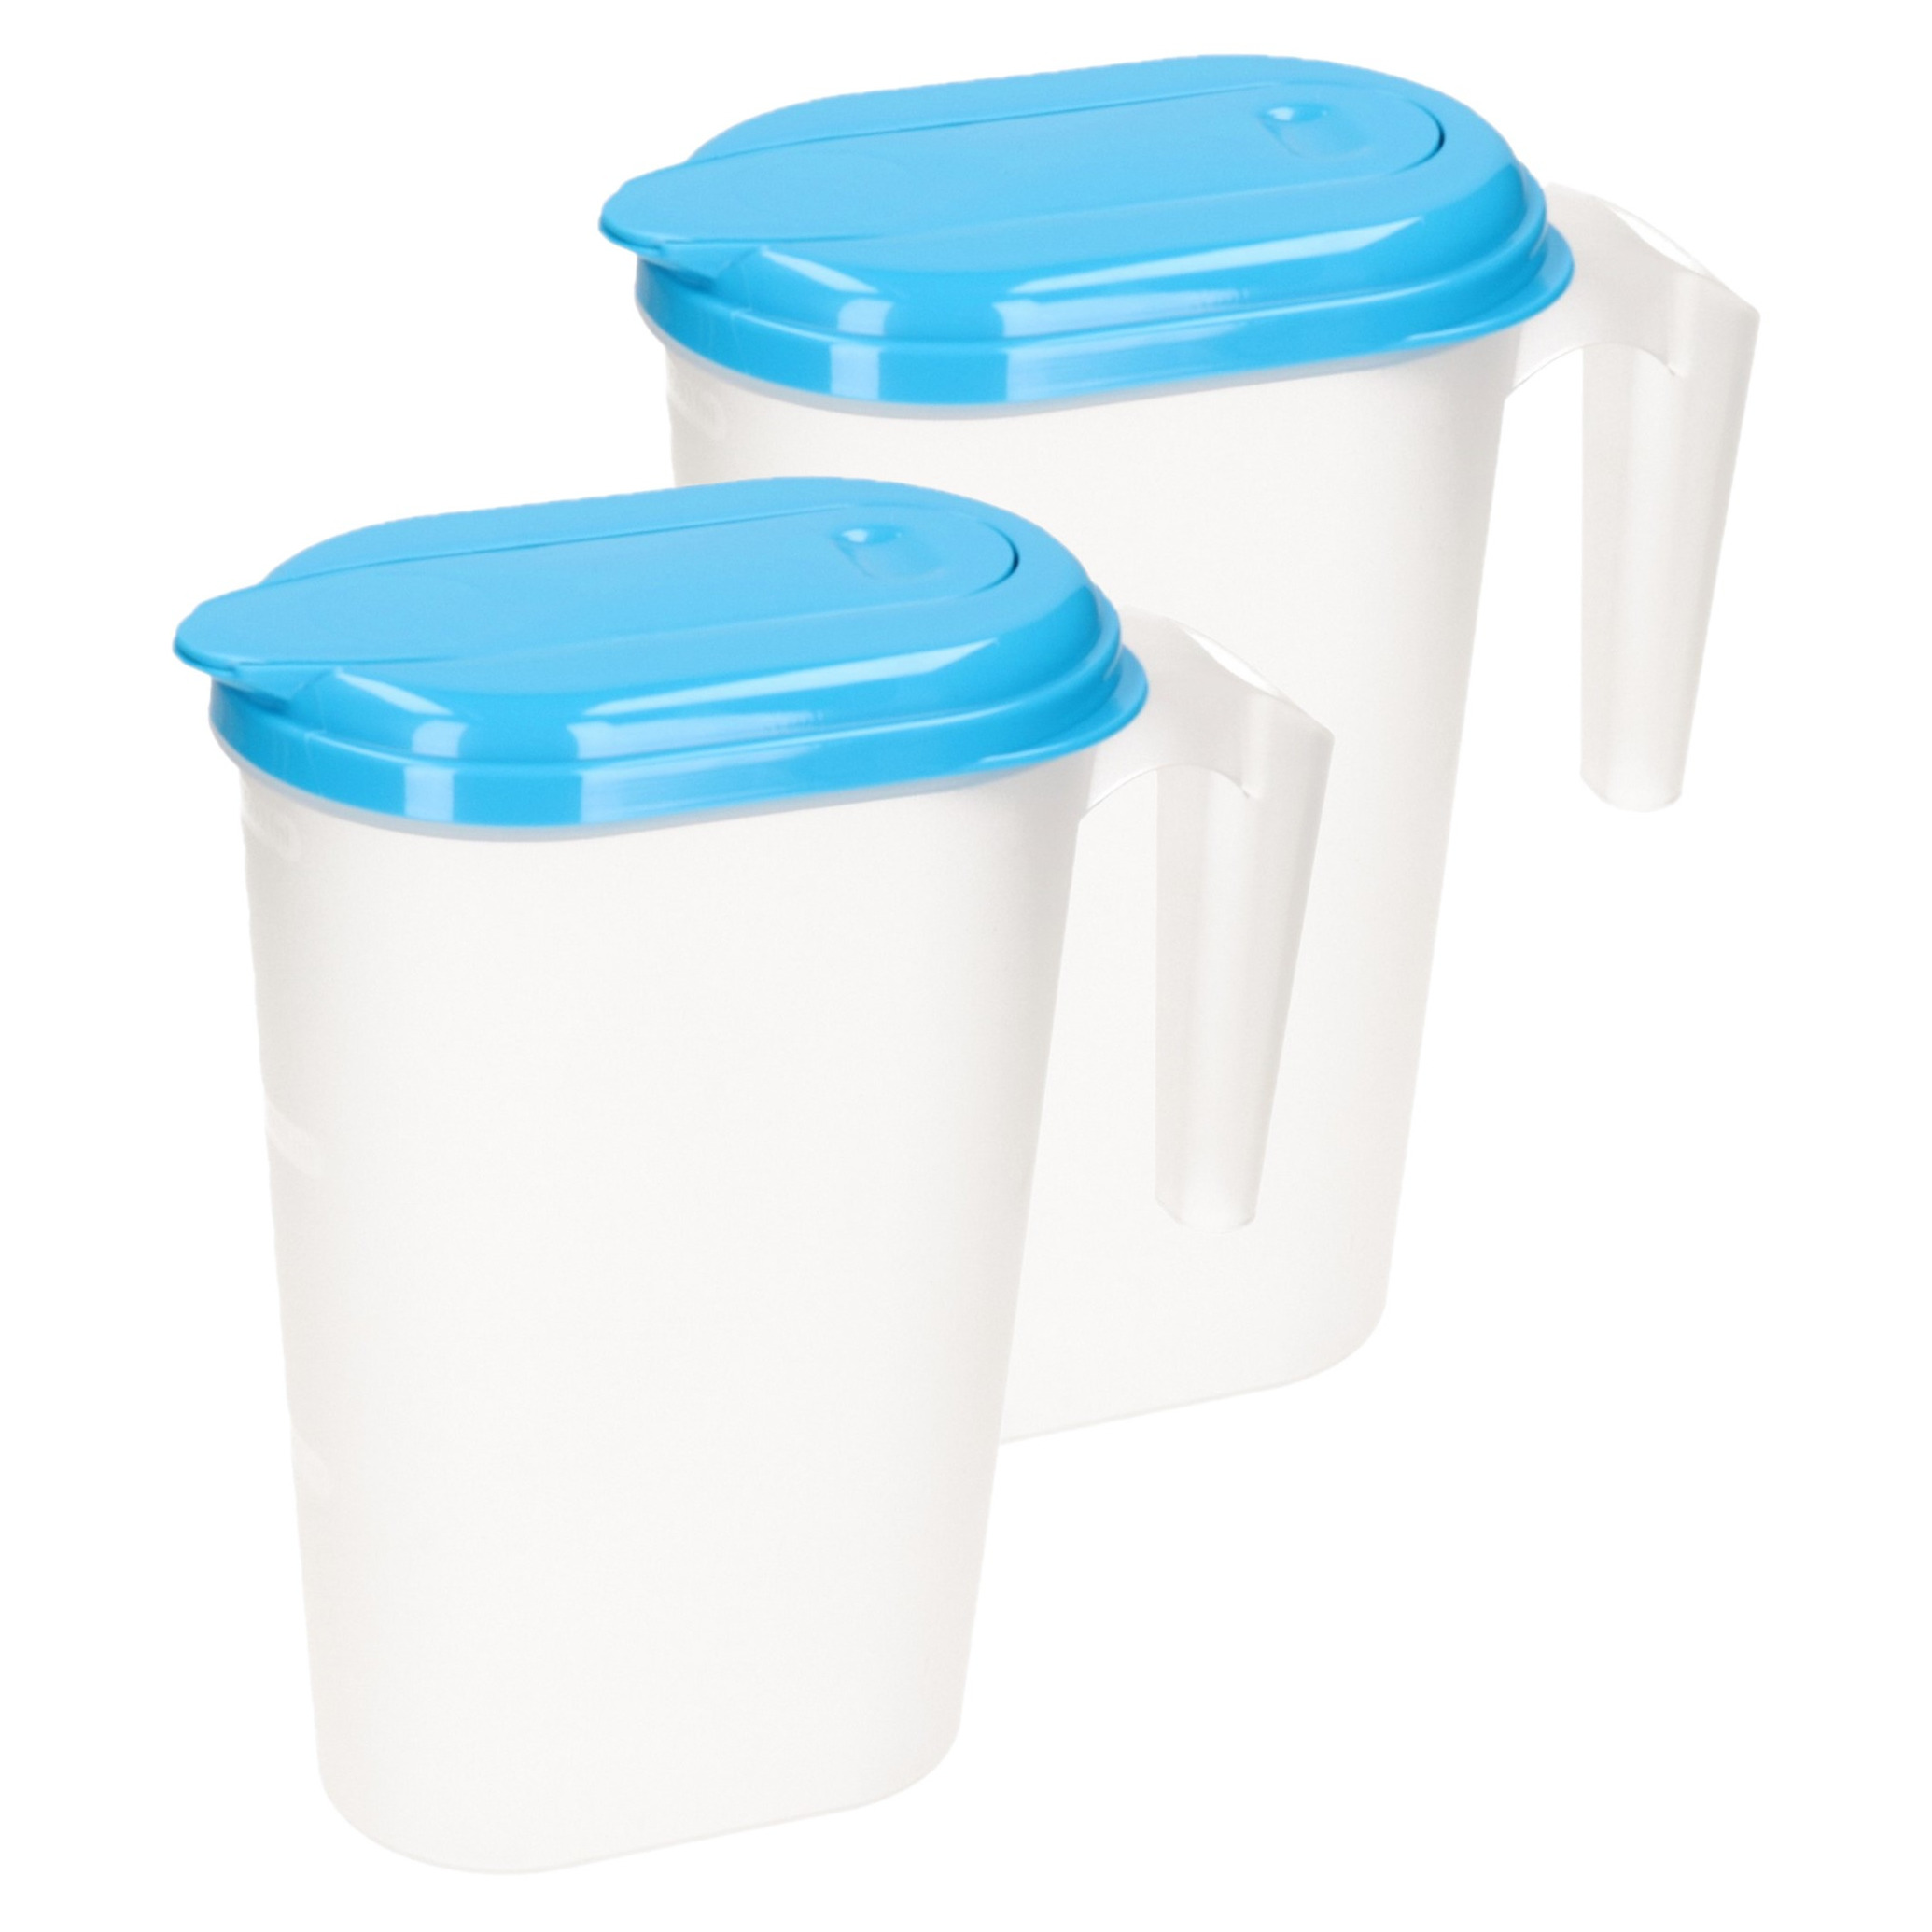 PlasticForte 2x stuks waterkan/sapkan transparant/blauw met deksel 1.6 liter kunststof -